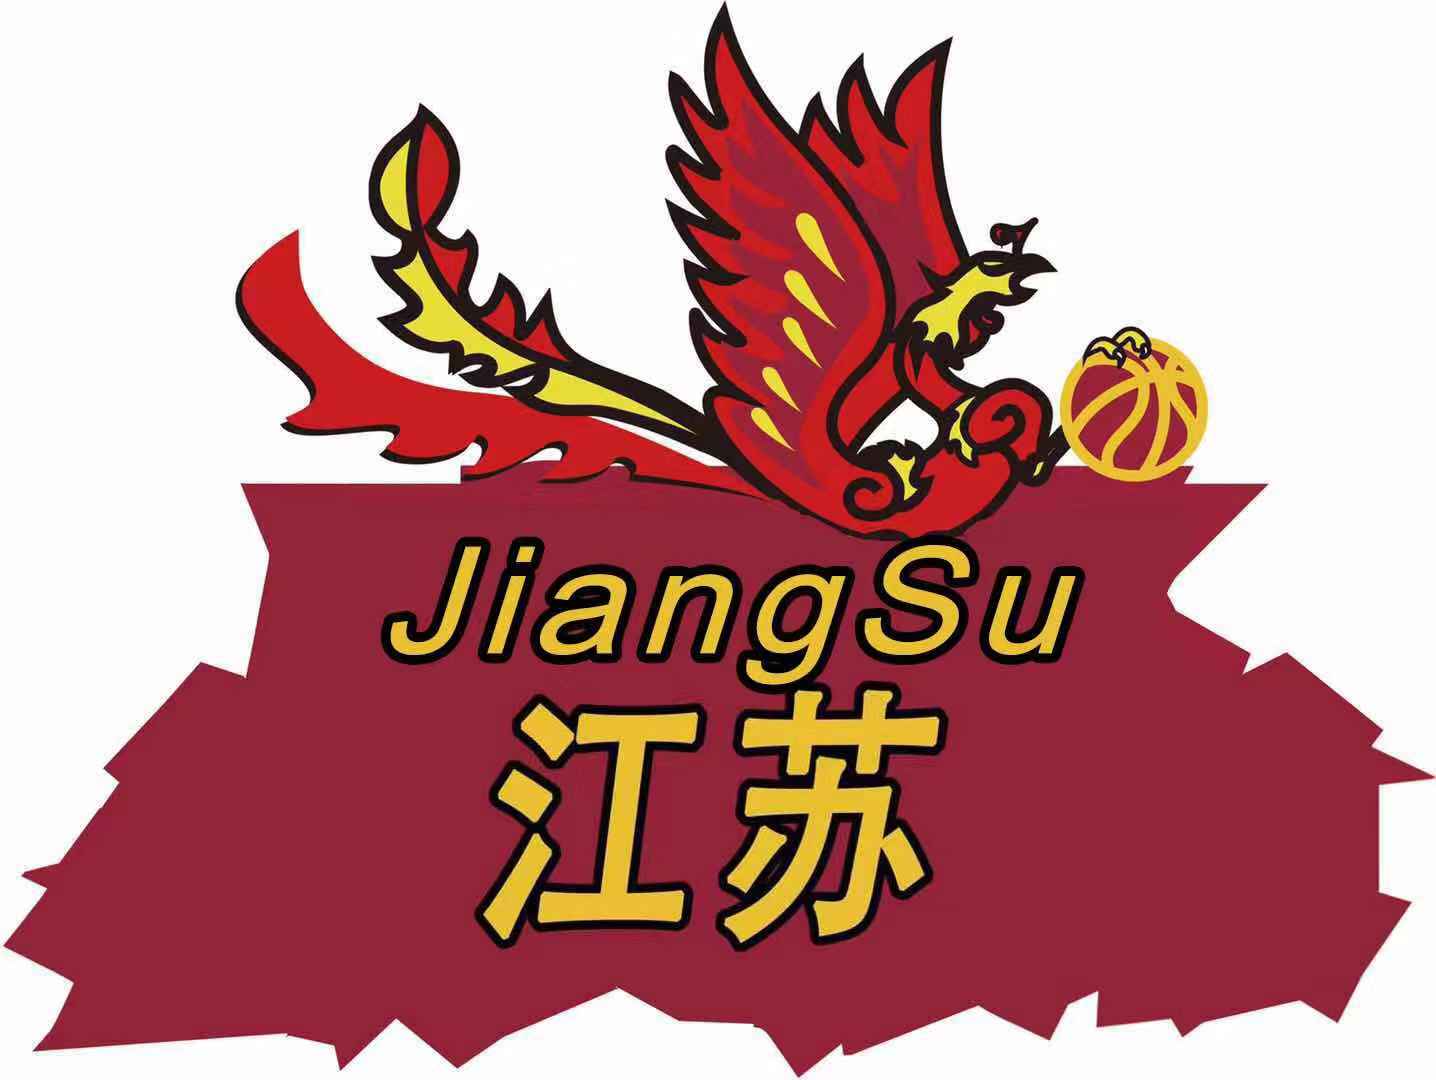 江蘇牛首山女籃 logo